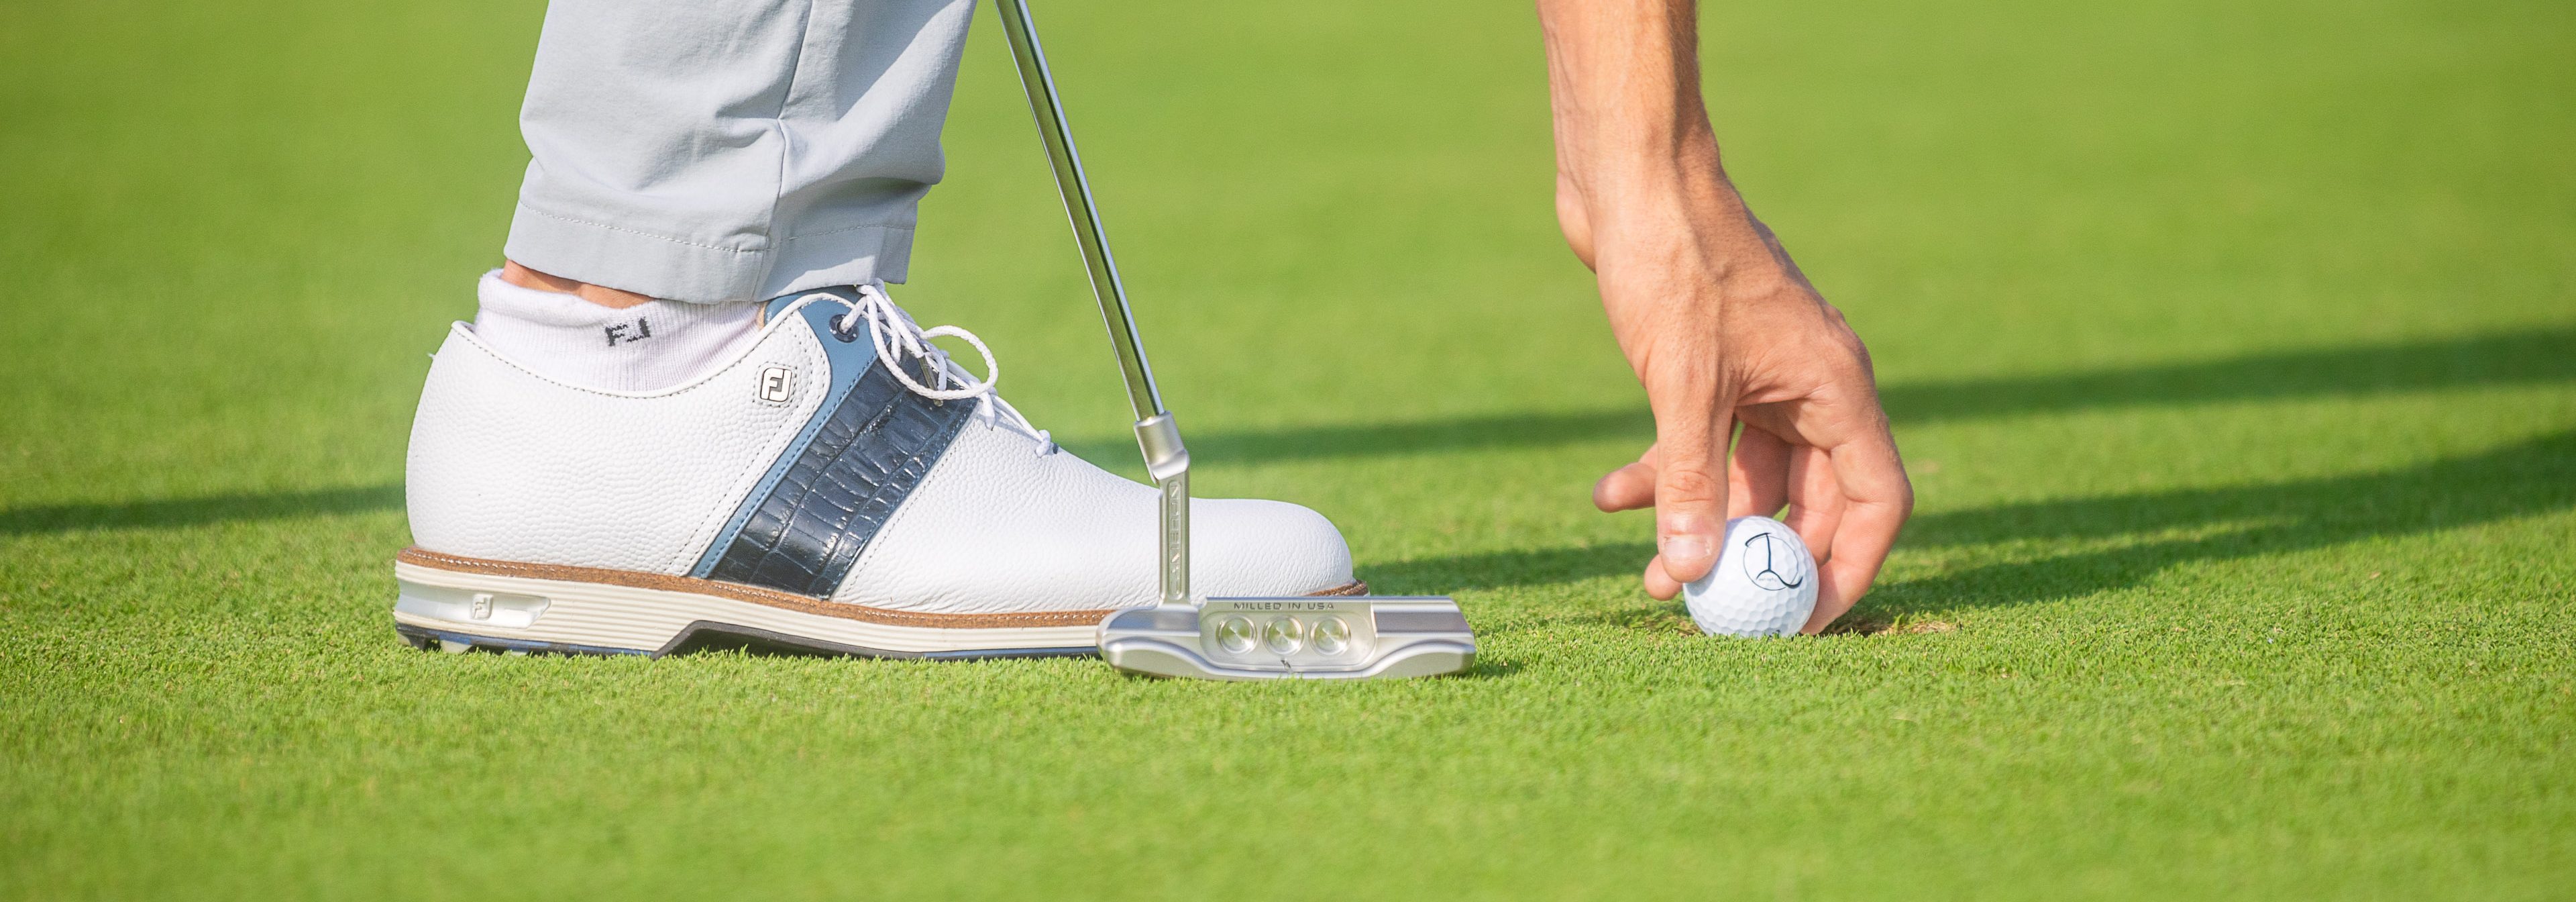 Our favorite resort golf wear, Golf Equipment: Clubs, Balls, Bags